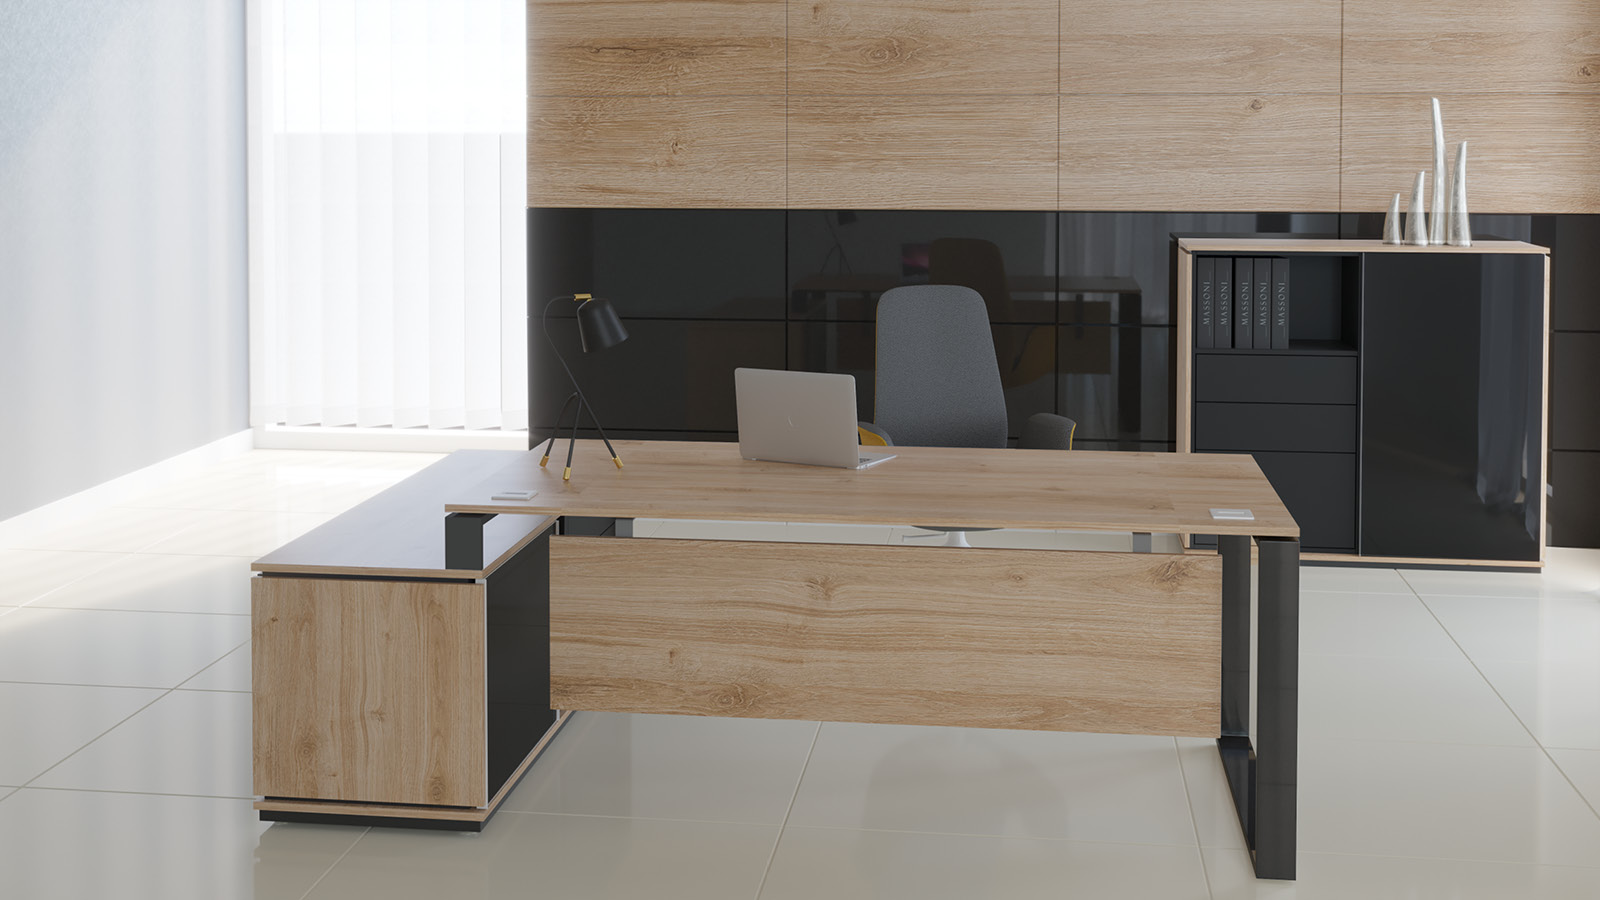 Meble biurowe ustawione w pomieszczeniu - biurko z lewitującym blatem, oparte na komodzie oraz zestaw szaf w formie archiwum.